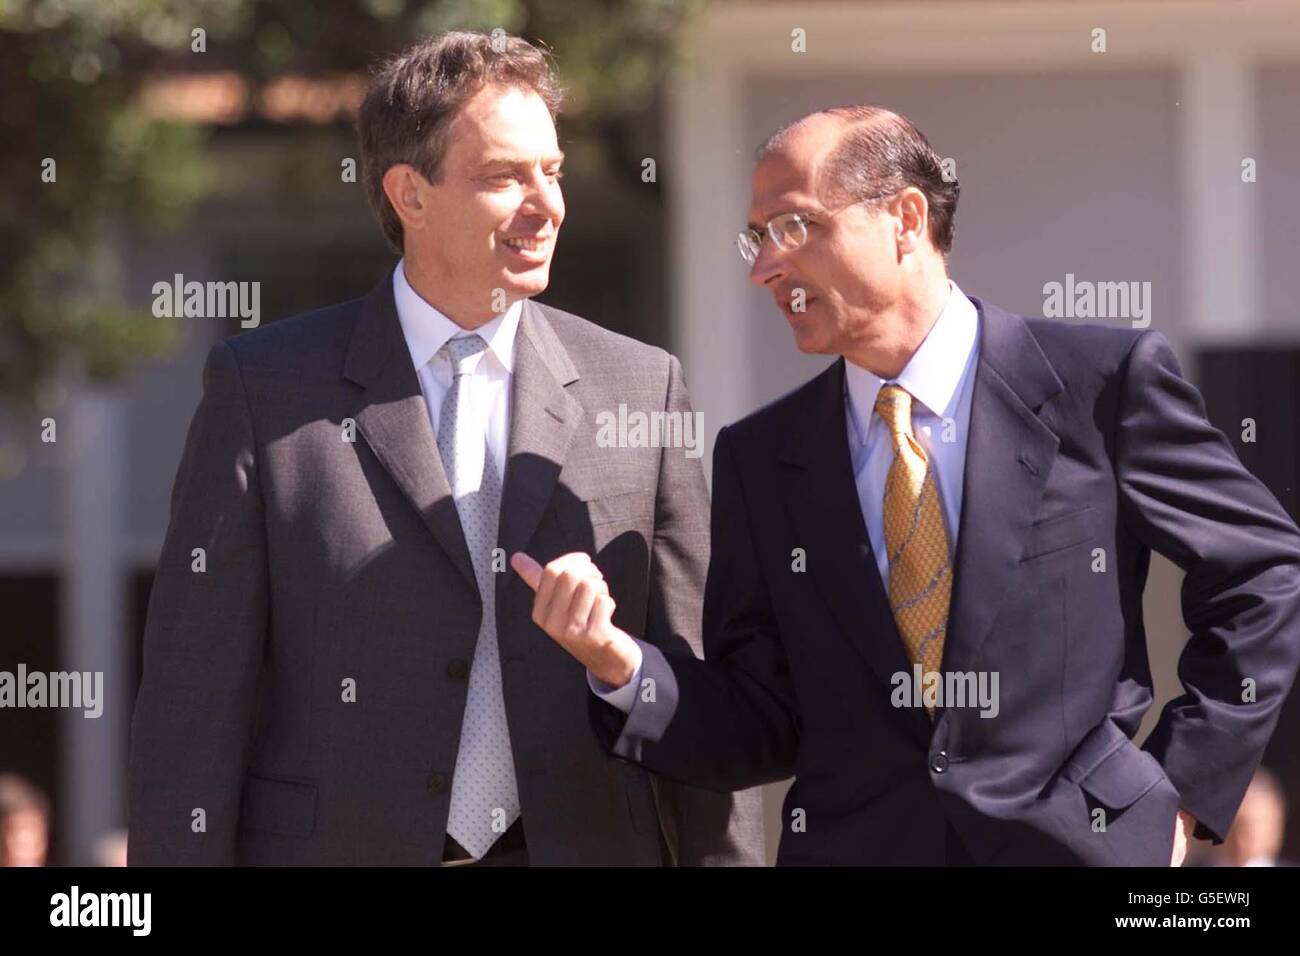 Der britische Premierminister Tony Blair (links) spricht mit dem Gouverneur des Bundesstaates Sau Paulo, Dr. Geraldo Alckmin, während eines Besuchs im Botanischen Garten in Sau Paulo, Brasilien. Bei seiner Ankunft wurde Blair von Greenpeace-Aktivisten begrüßt, die gegen die Globalisierung protestierten. Stockfoto